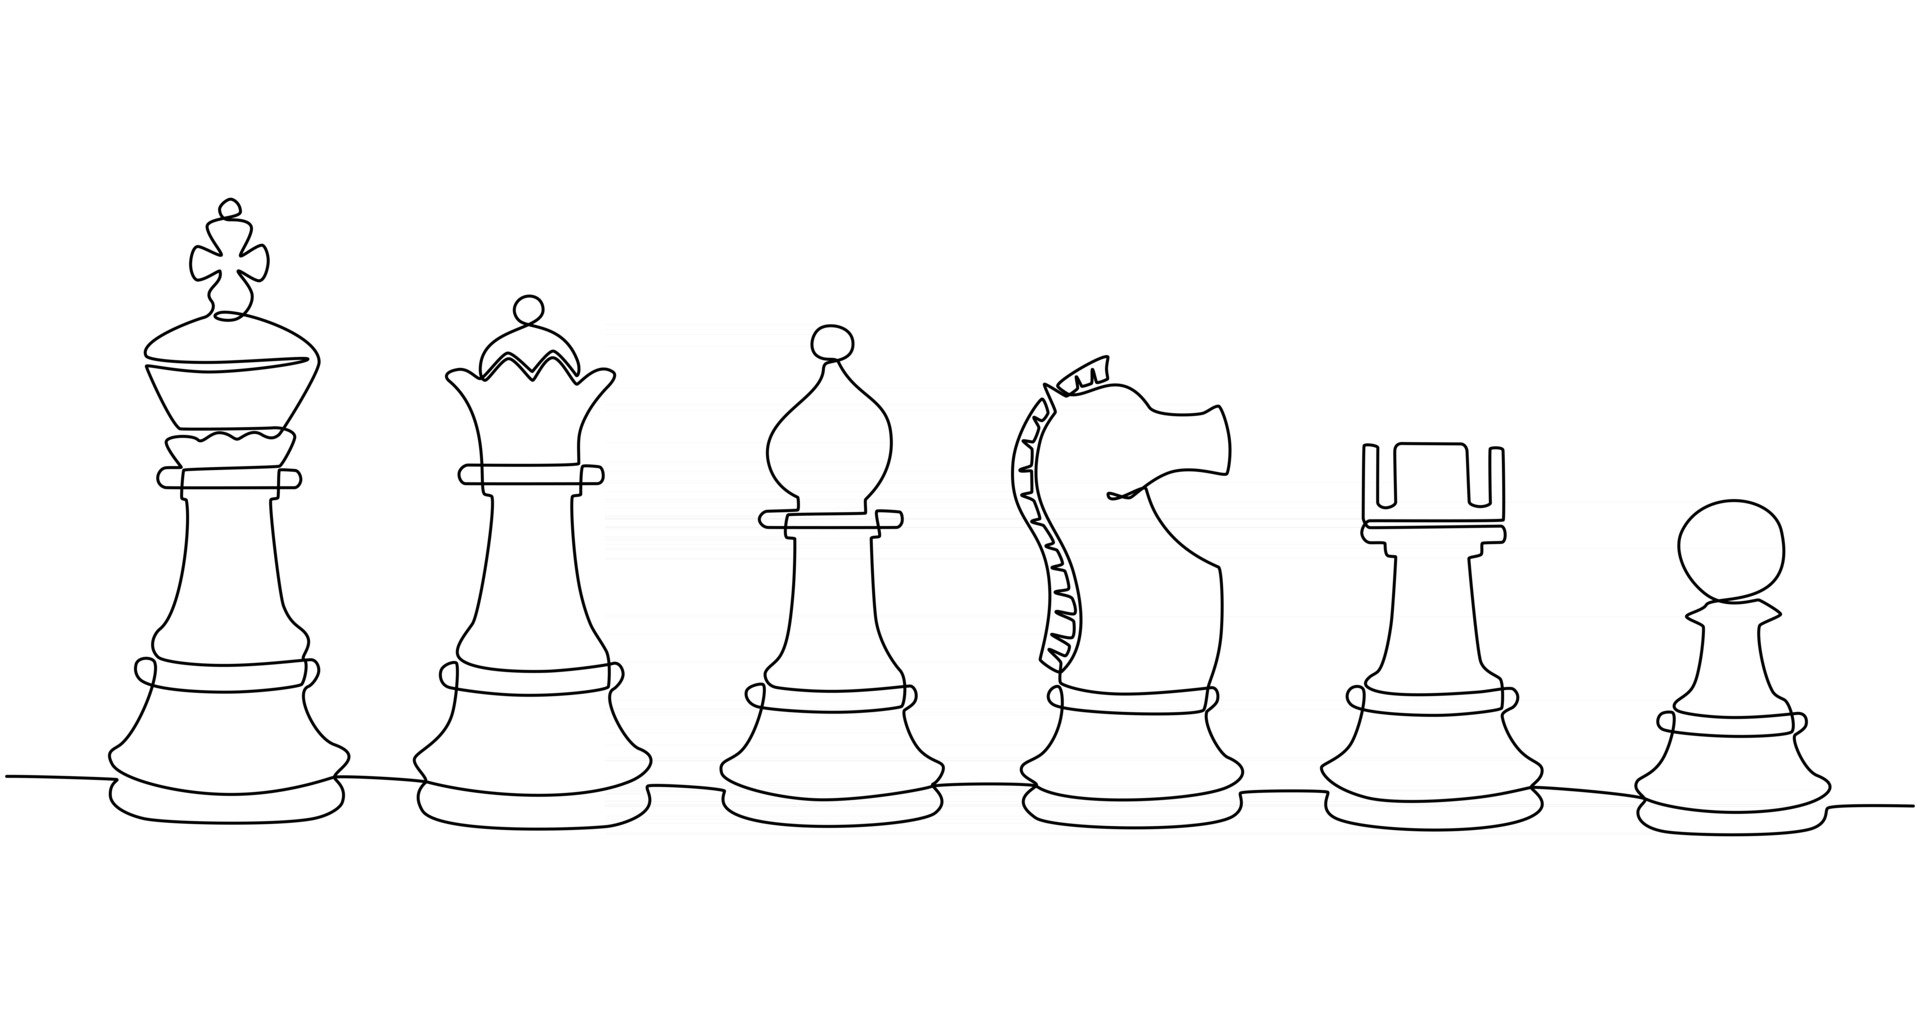 шахматные фигуры из пенопласта своими руками шаблоны